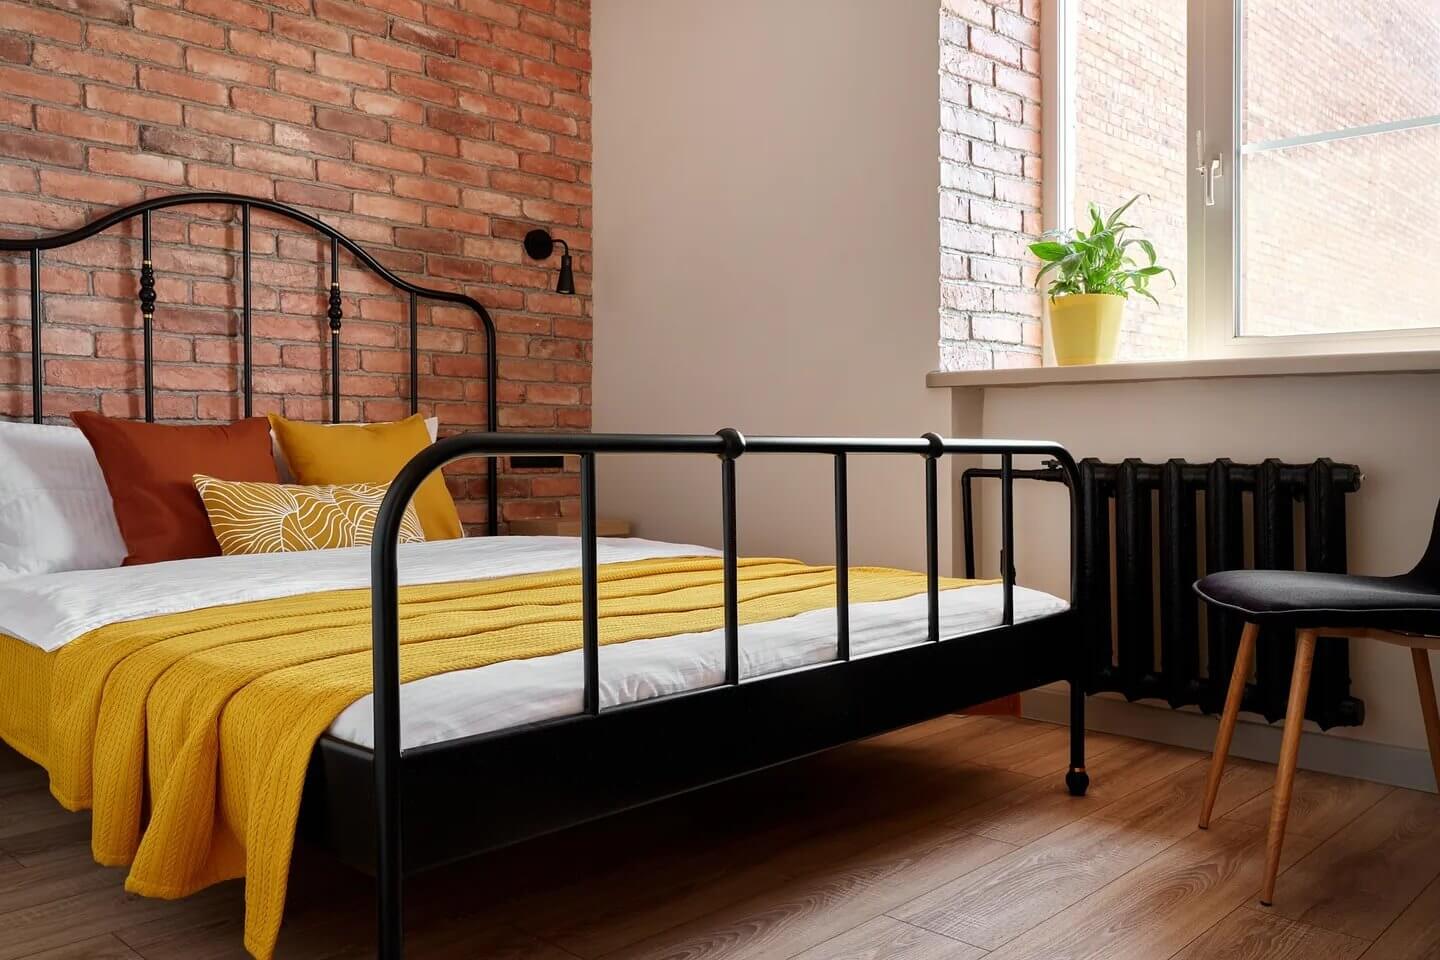 Кровать с желтым покрывалом и красно-кирпичная кладка.